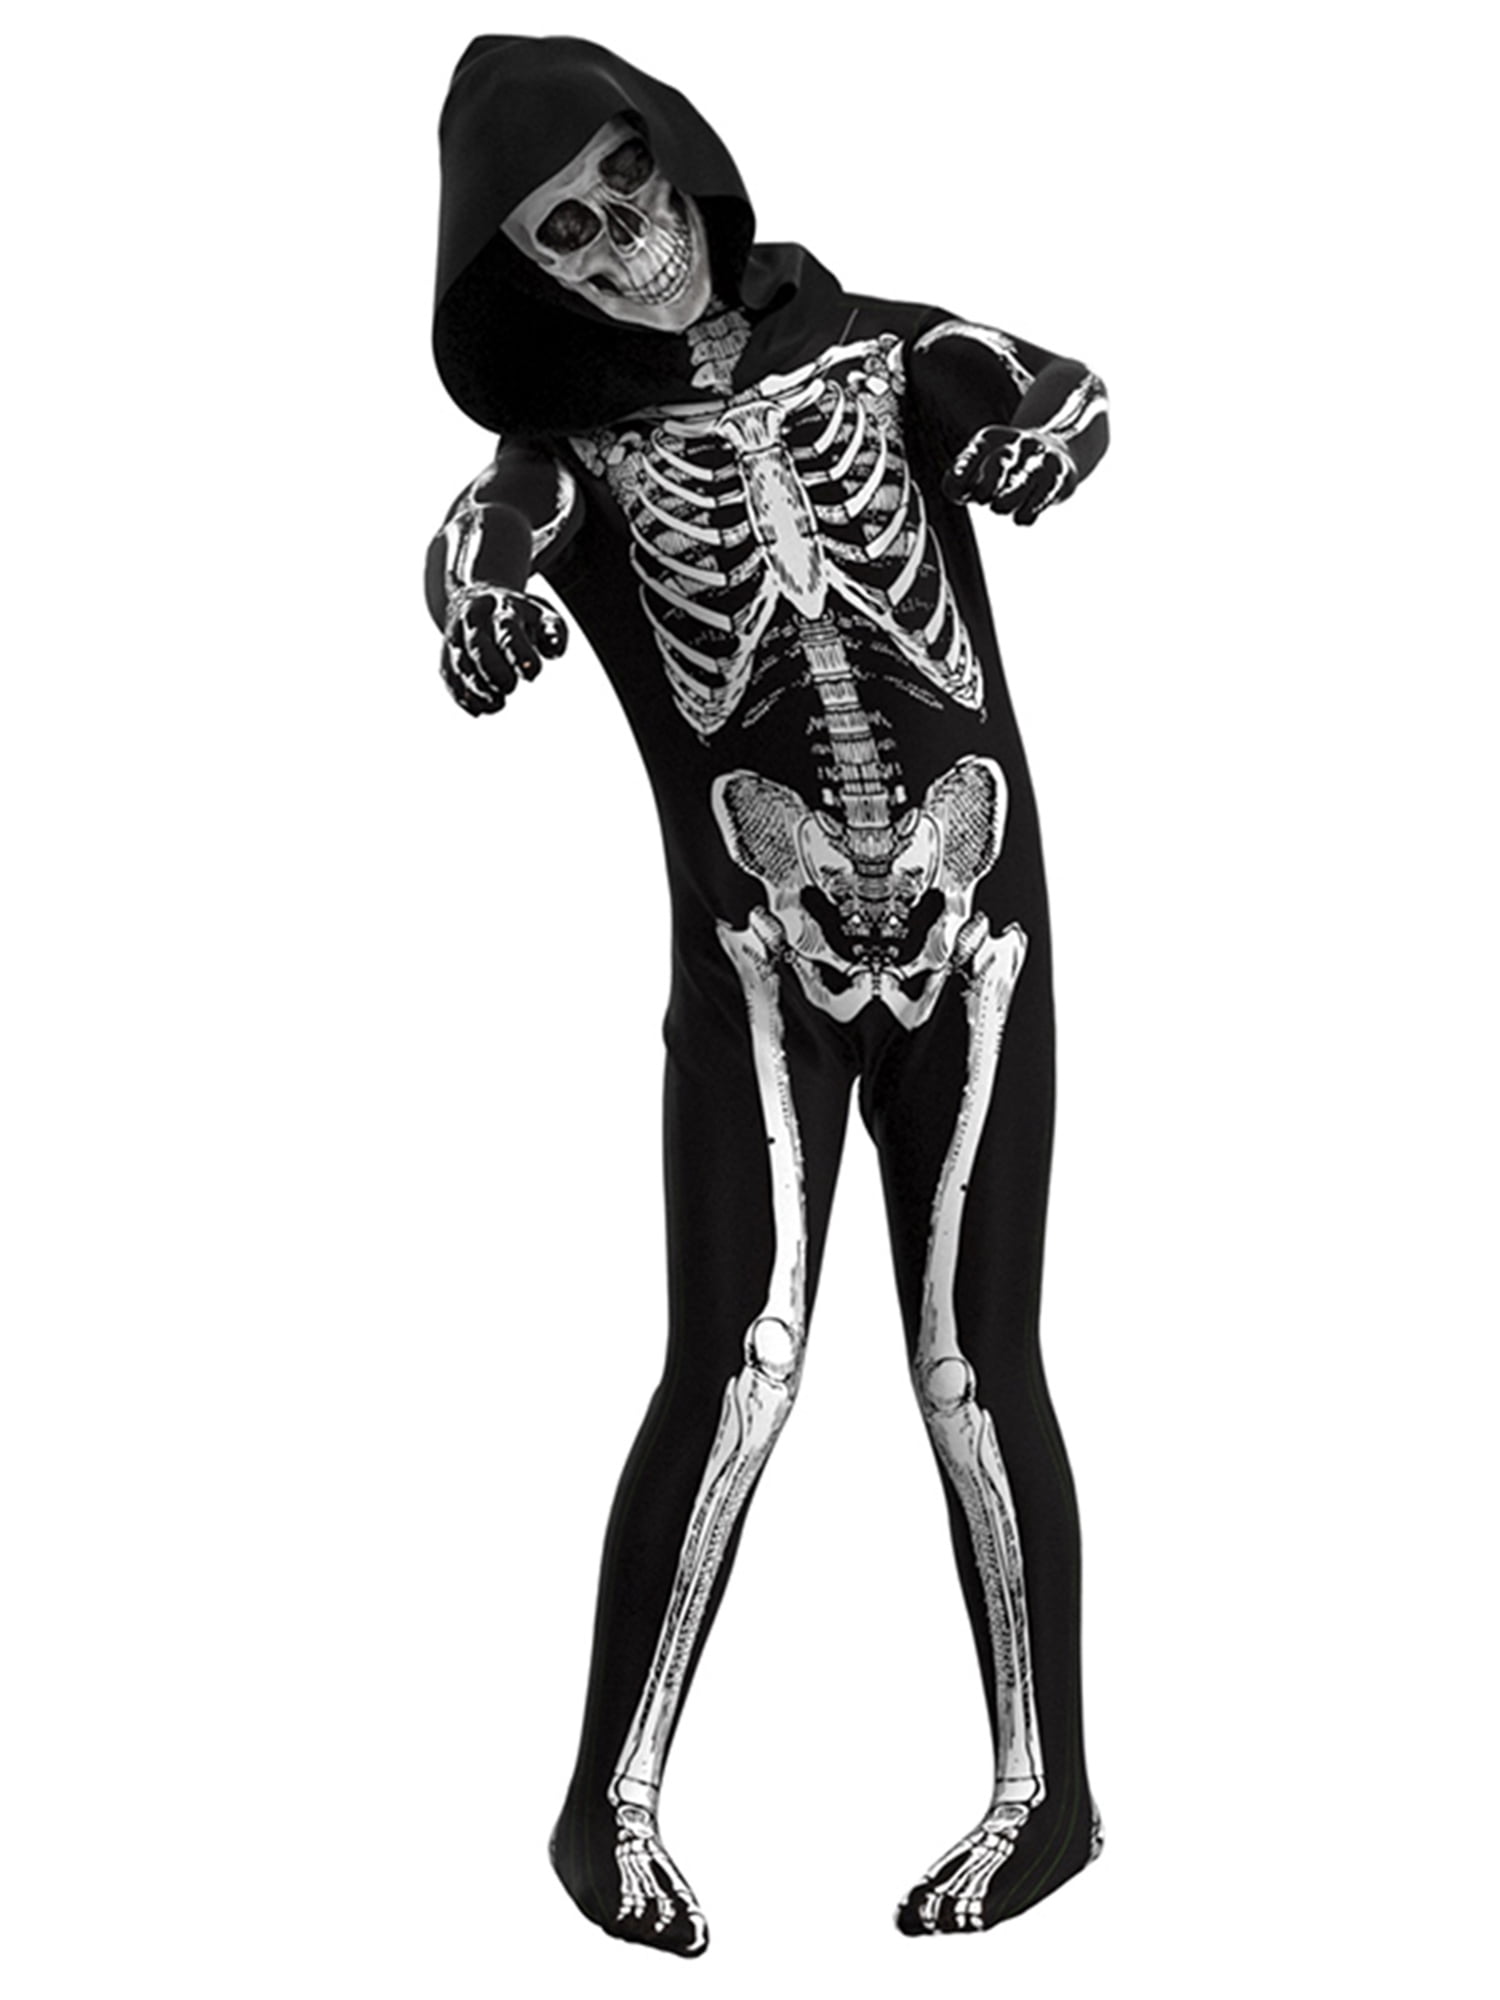 The Skull & Bones Morphsuit